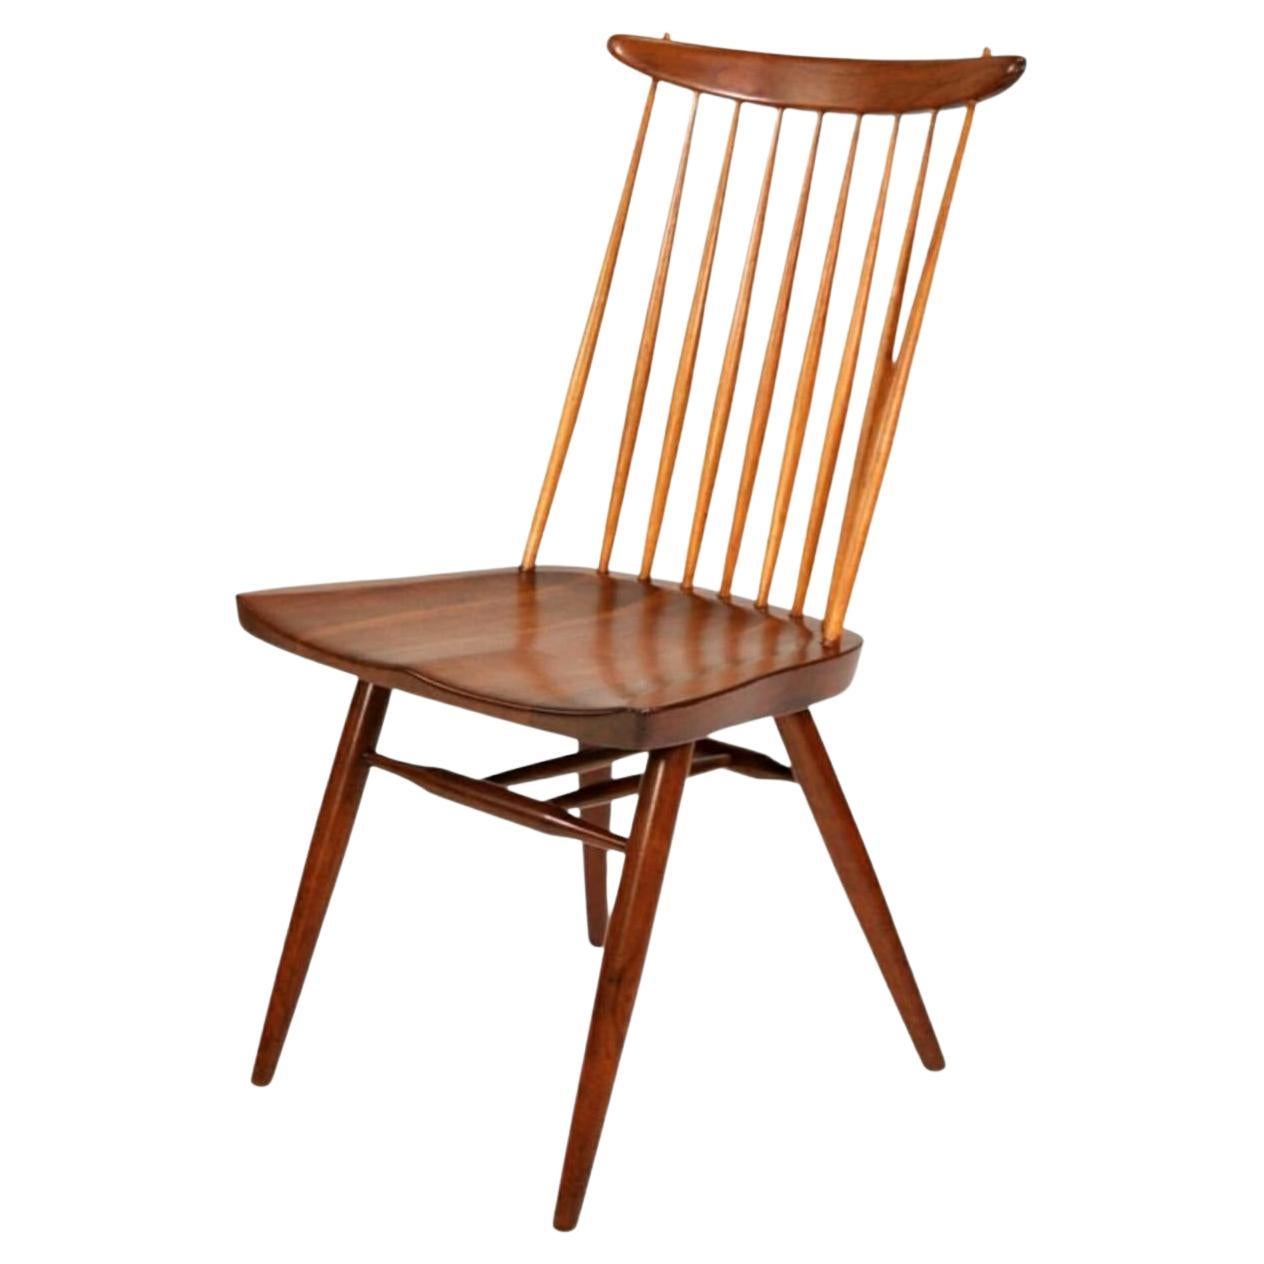 Seltenes und frühes Modell 271 oder New Chair, der ikonische Windsor-Stuhl mit Spindellehne, der 1956 von dem japanisch-amerikanischen Tischlermeister George Nakashima neu erfunden wurde. Ostindisches Lorbeerholz in der originalen Sundra-Ausführung